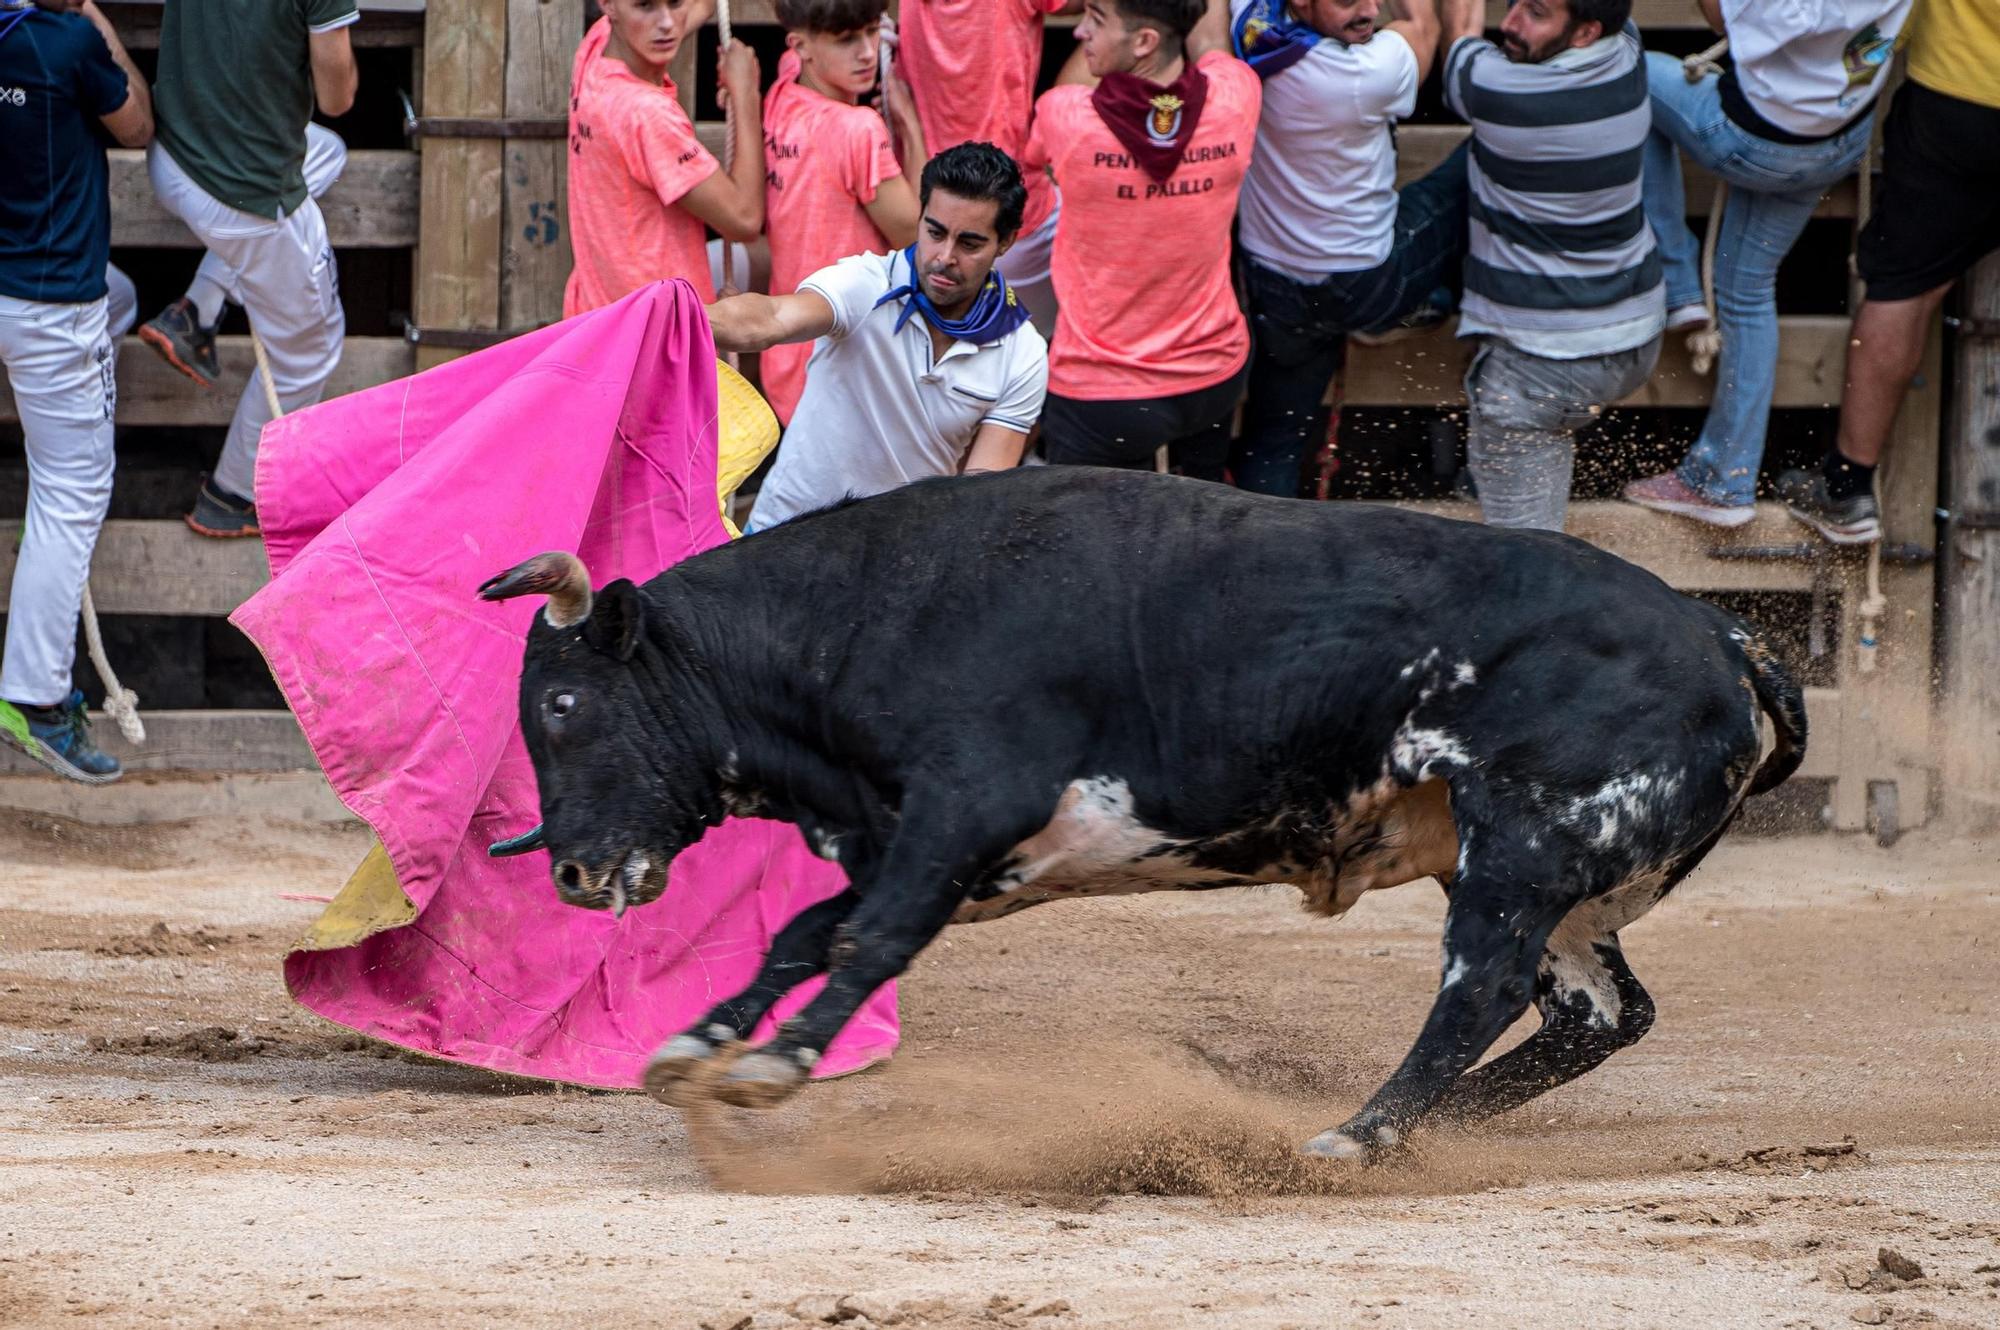 Corre de bou de Cardona: les fotos de l'última jornada